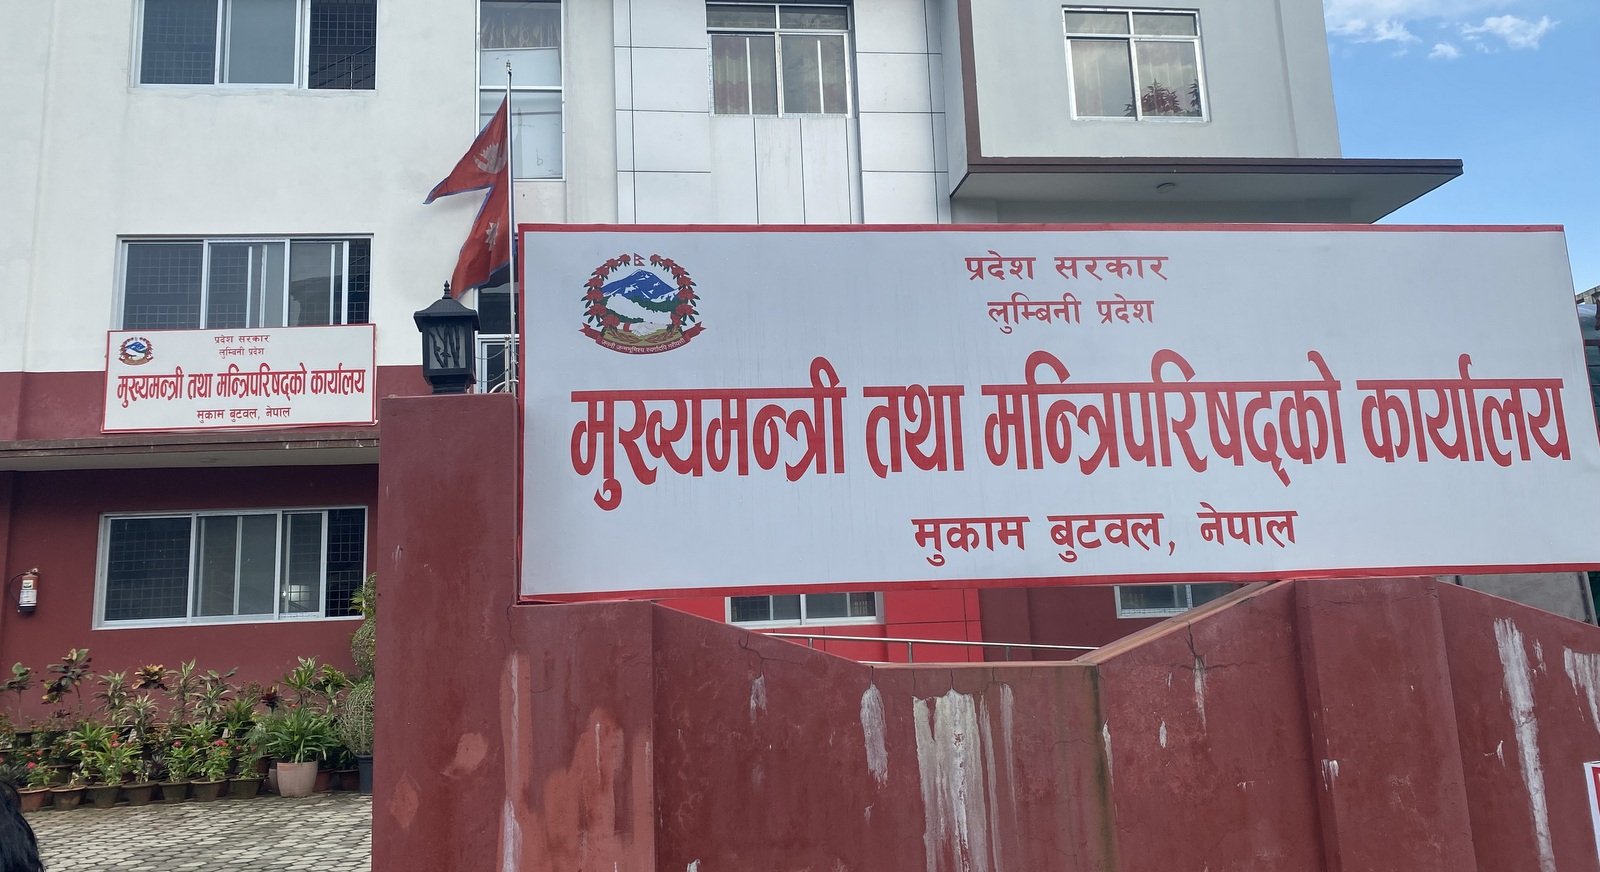 लुम्बिनी प्रदेश स्थापनाको चार वर्ष : जनतामा थपिएन उत्साह